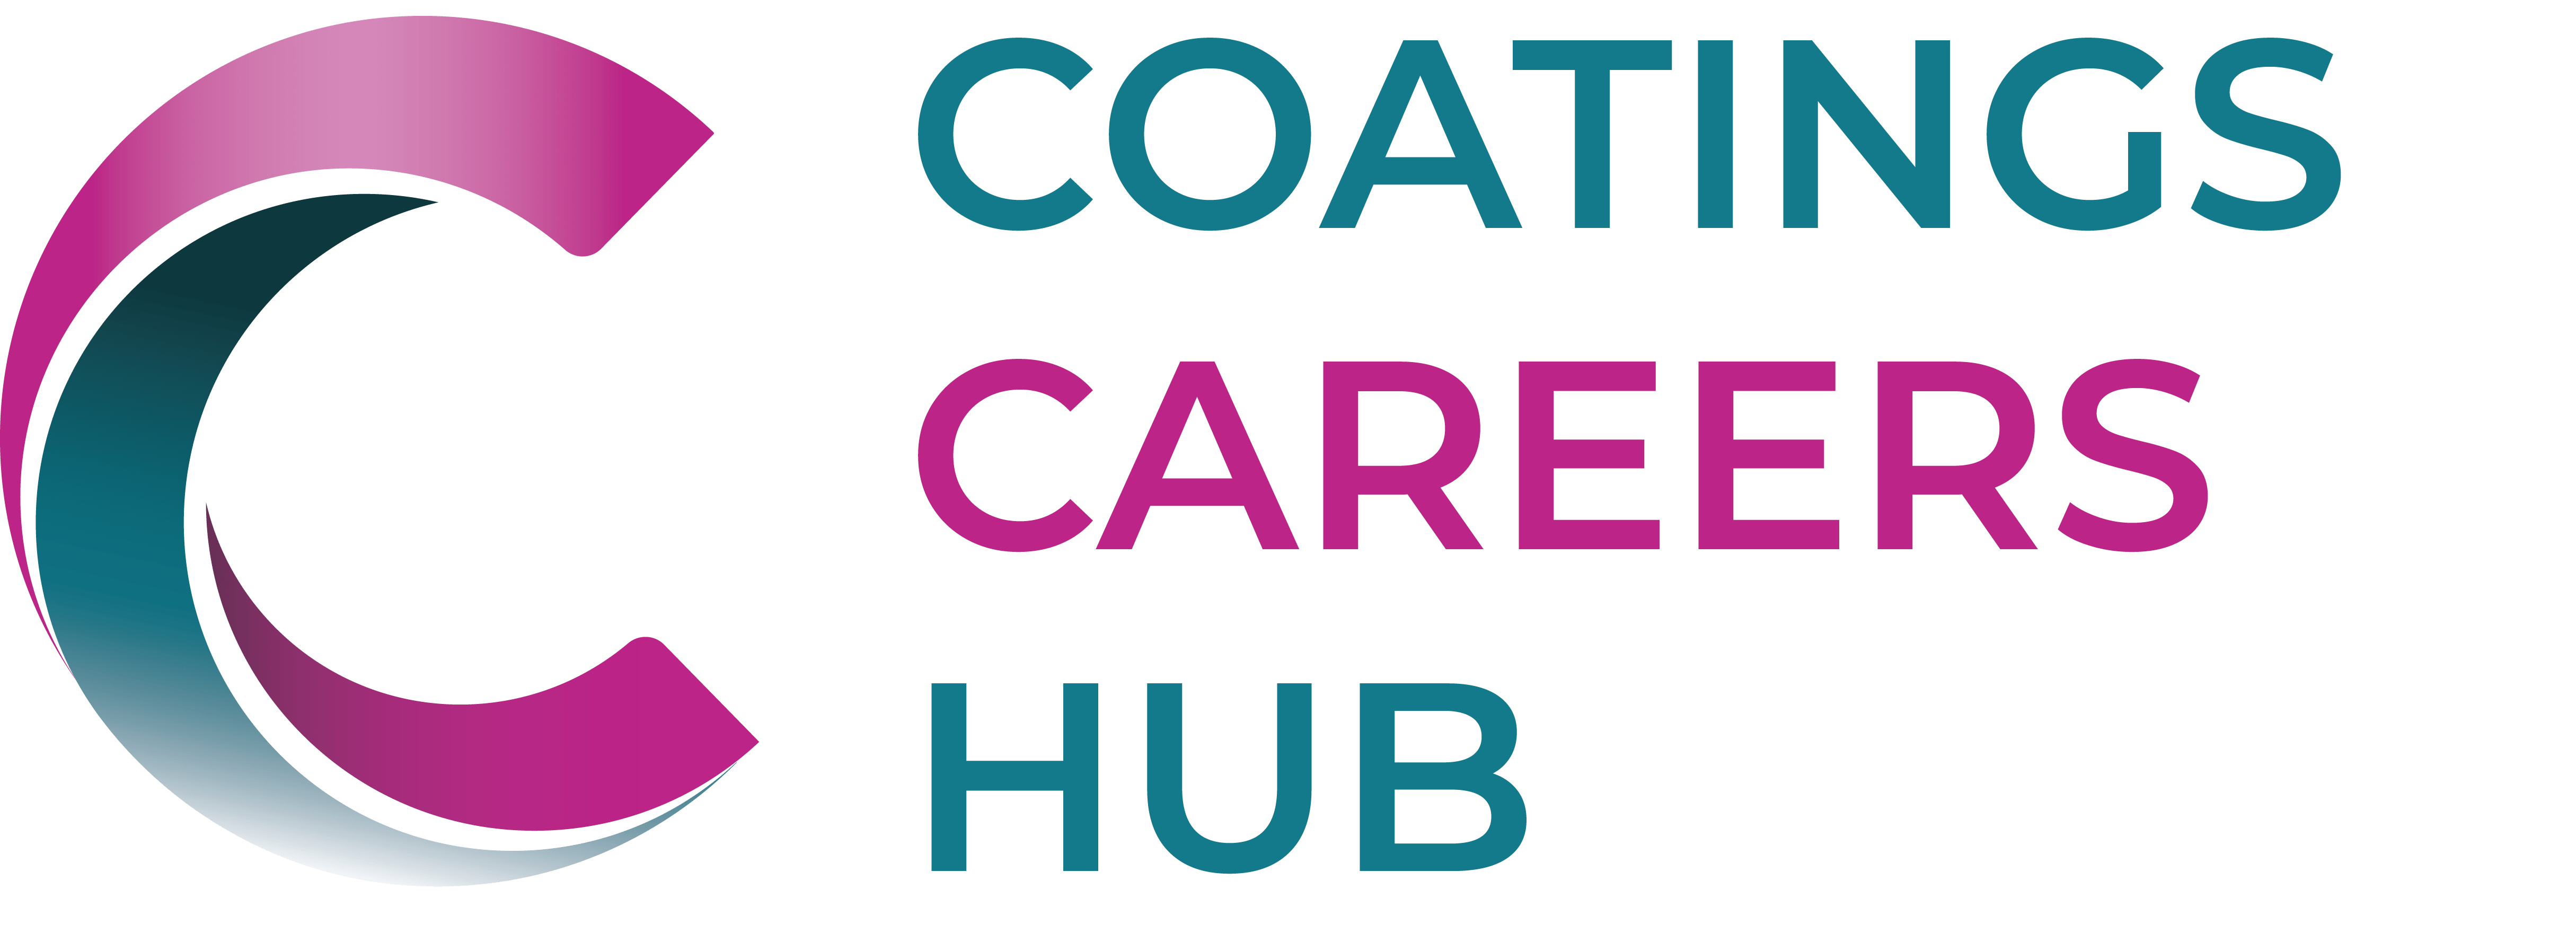 Coatings Careers Hub